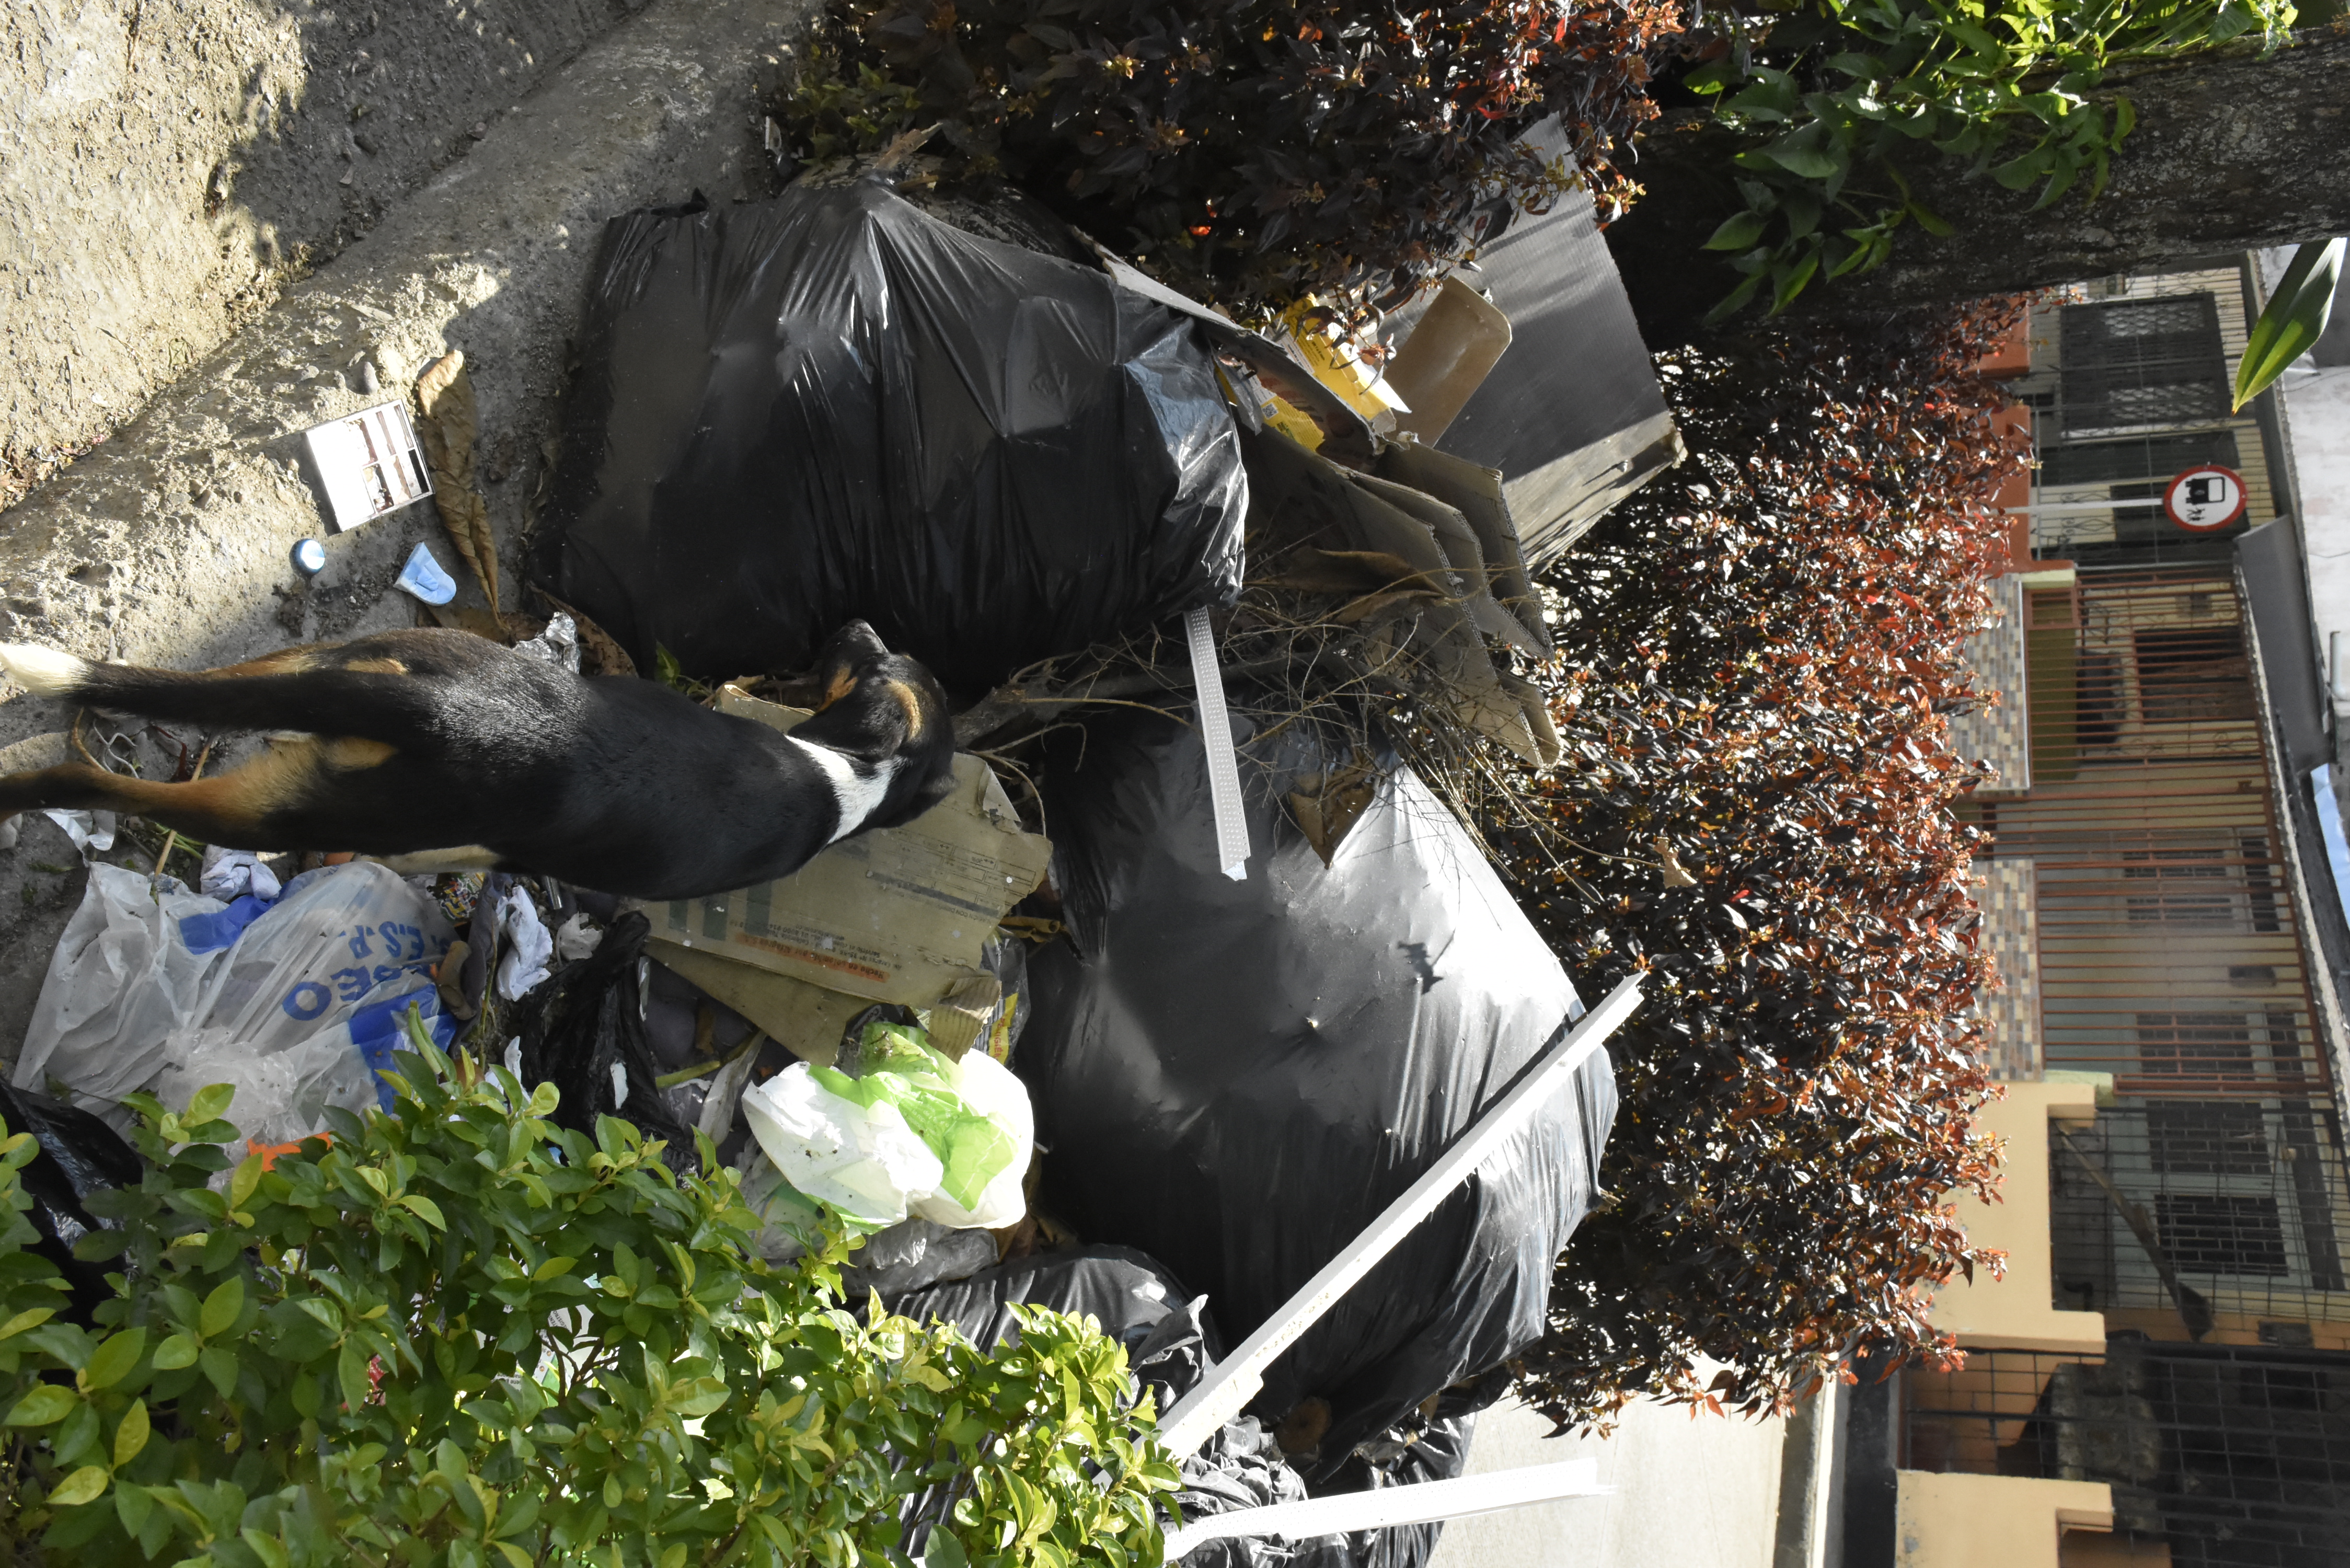 Algunos habitantes de calle vacían los residuos de las bolsas negras en el suelo, para revenderlas.